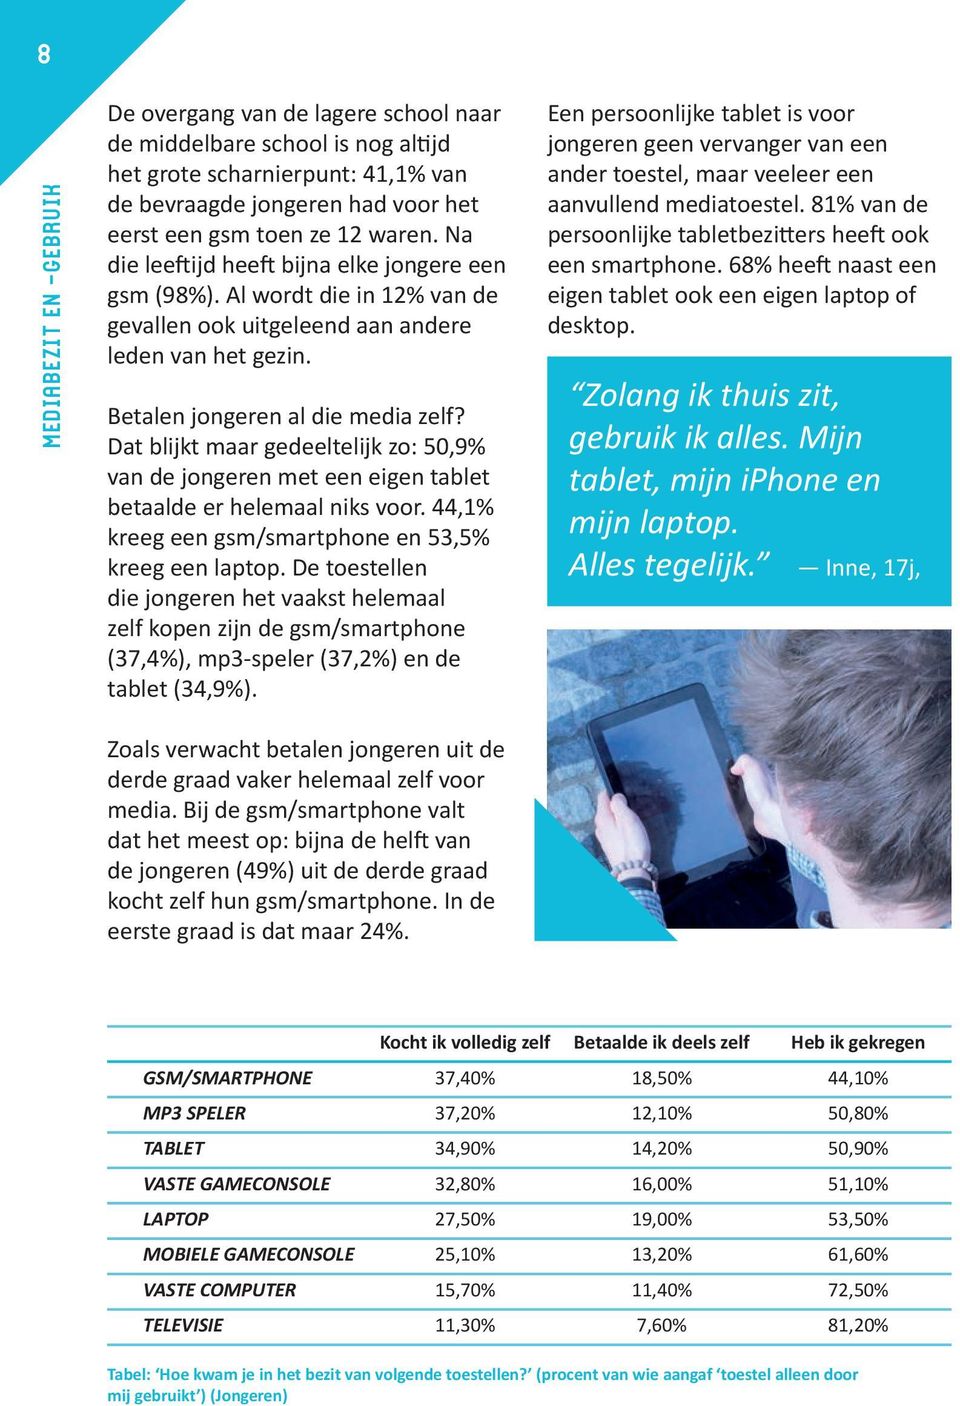 Dat blijkt maar gedeeltelijk zo: 50,9% van de jongeren met een eigen tablet betaalde er helemaal niks voor. 44,1% kreeg een gsm/smartphone en 53,5% kreeg een laptop.